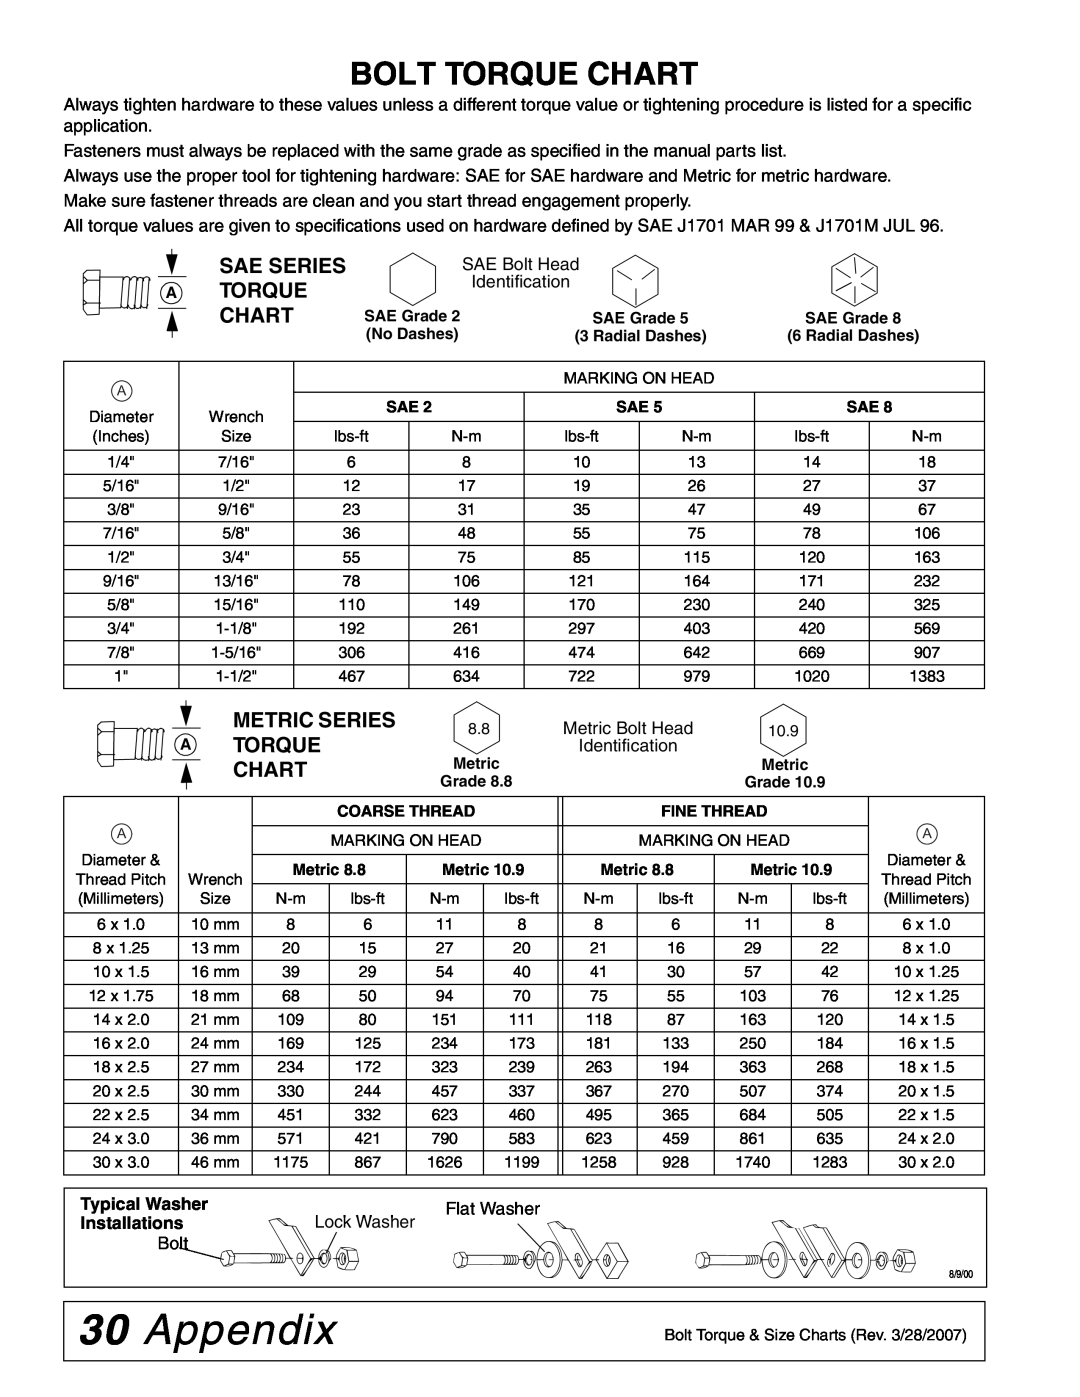 Woods Equipment TL52, TL73, TL84 manual Appendix, Bolt Torque Chart, Sae Series A Torque Chart, Metric Series 